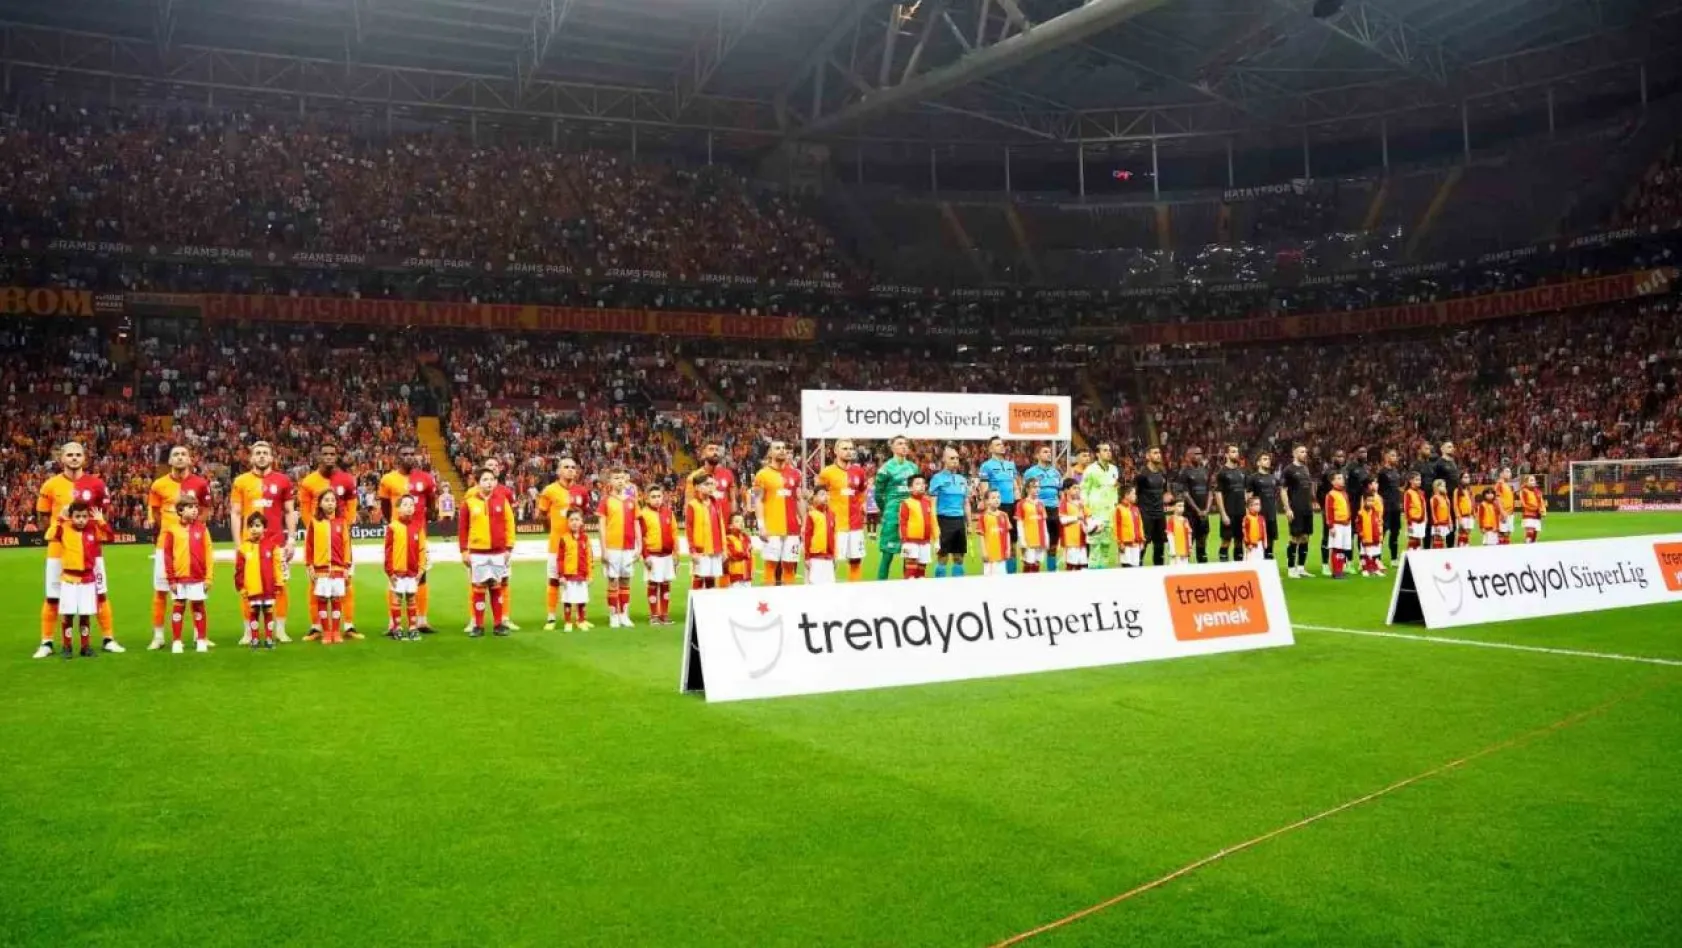 Trendyol Süper Lig: Galatasaray: 1 - Hatayspor: 0 (Maç devam ediyor)